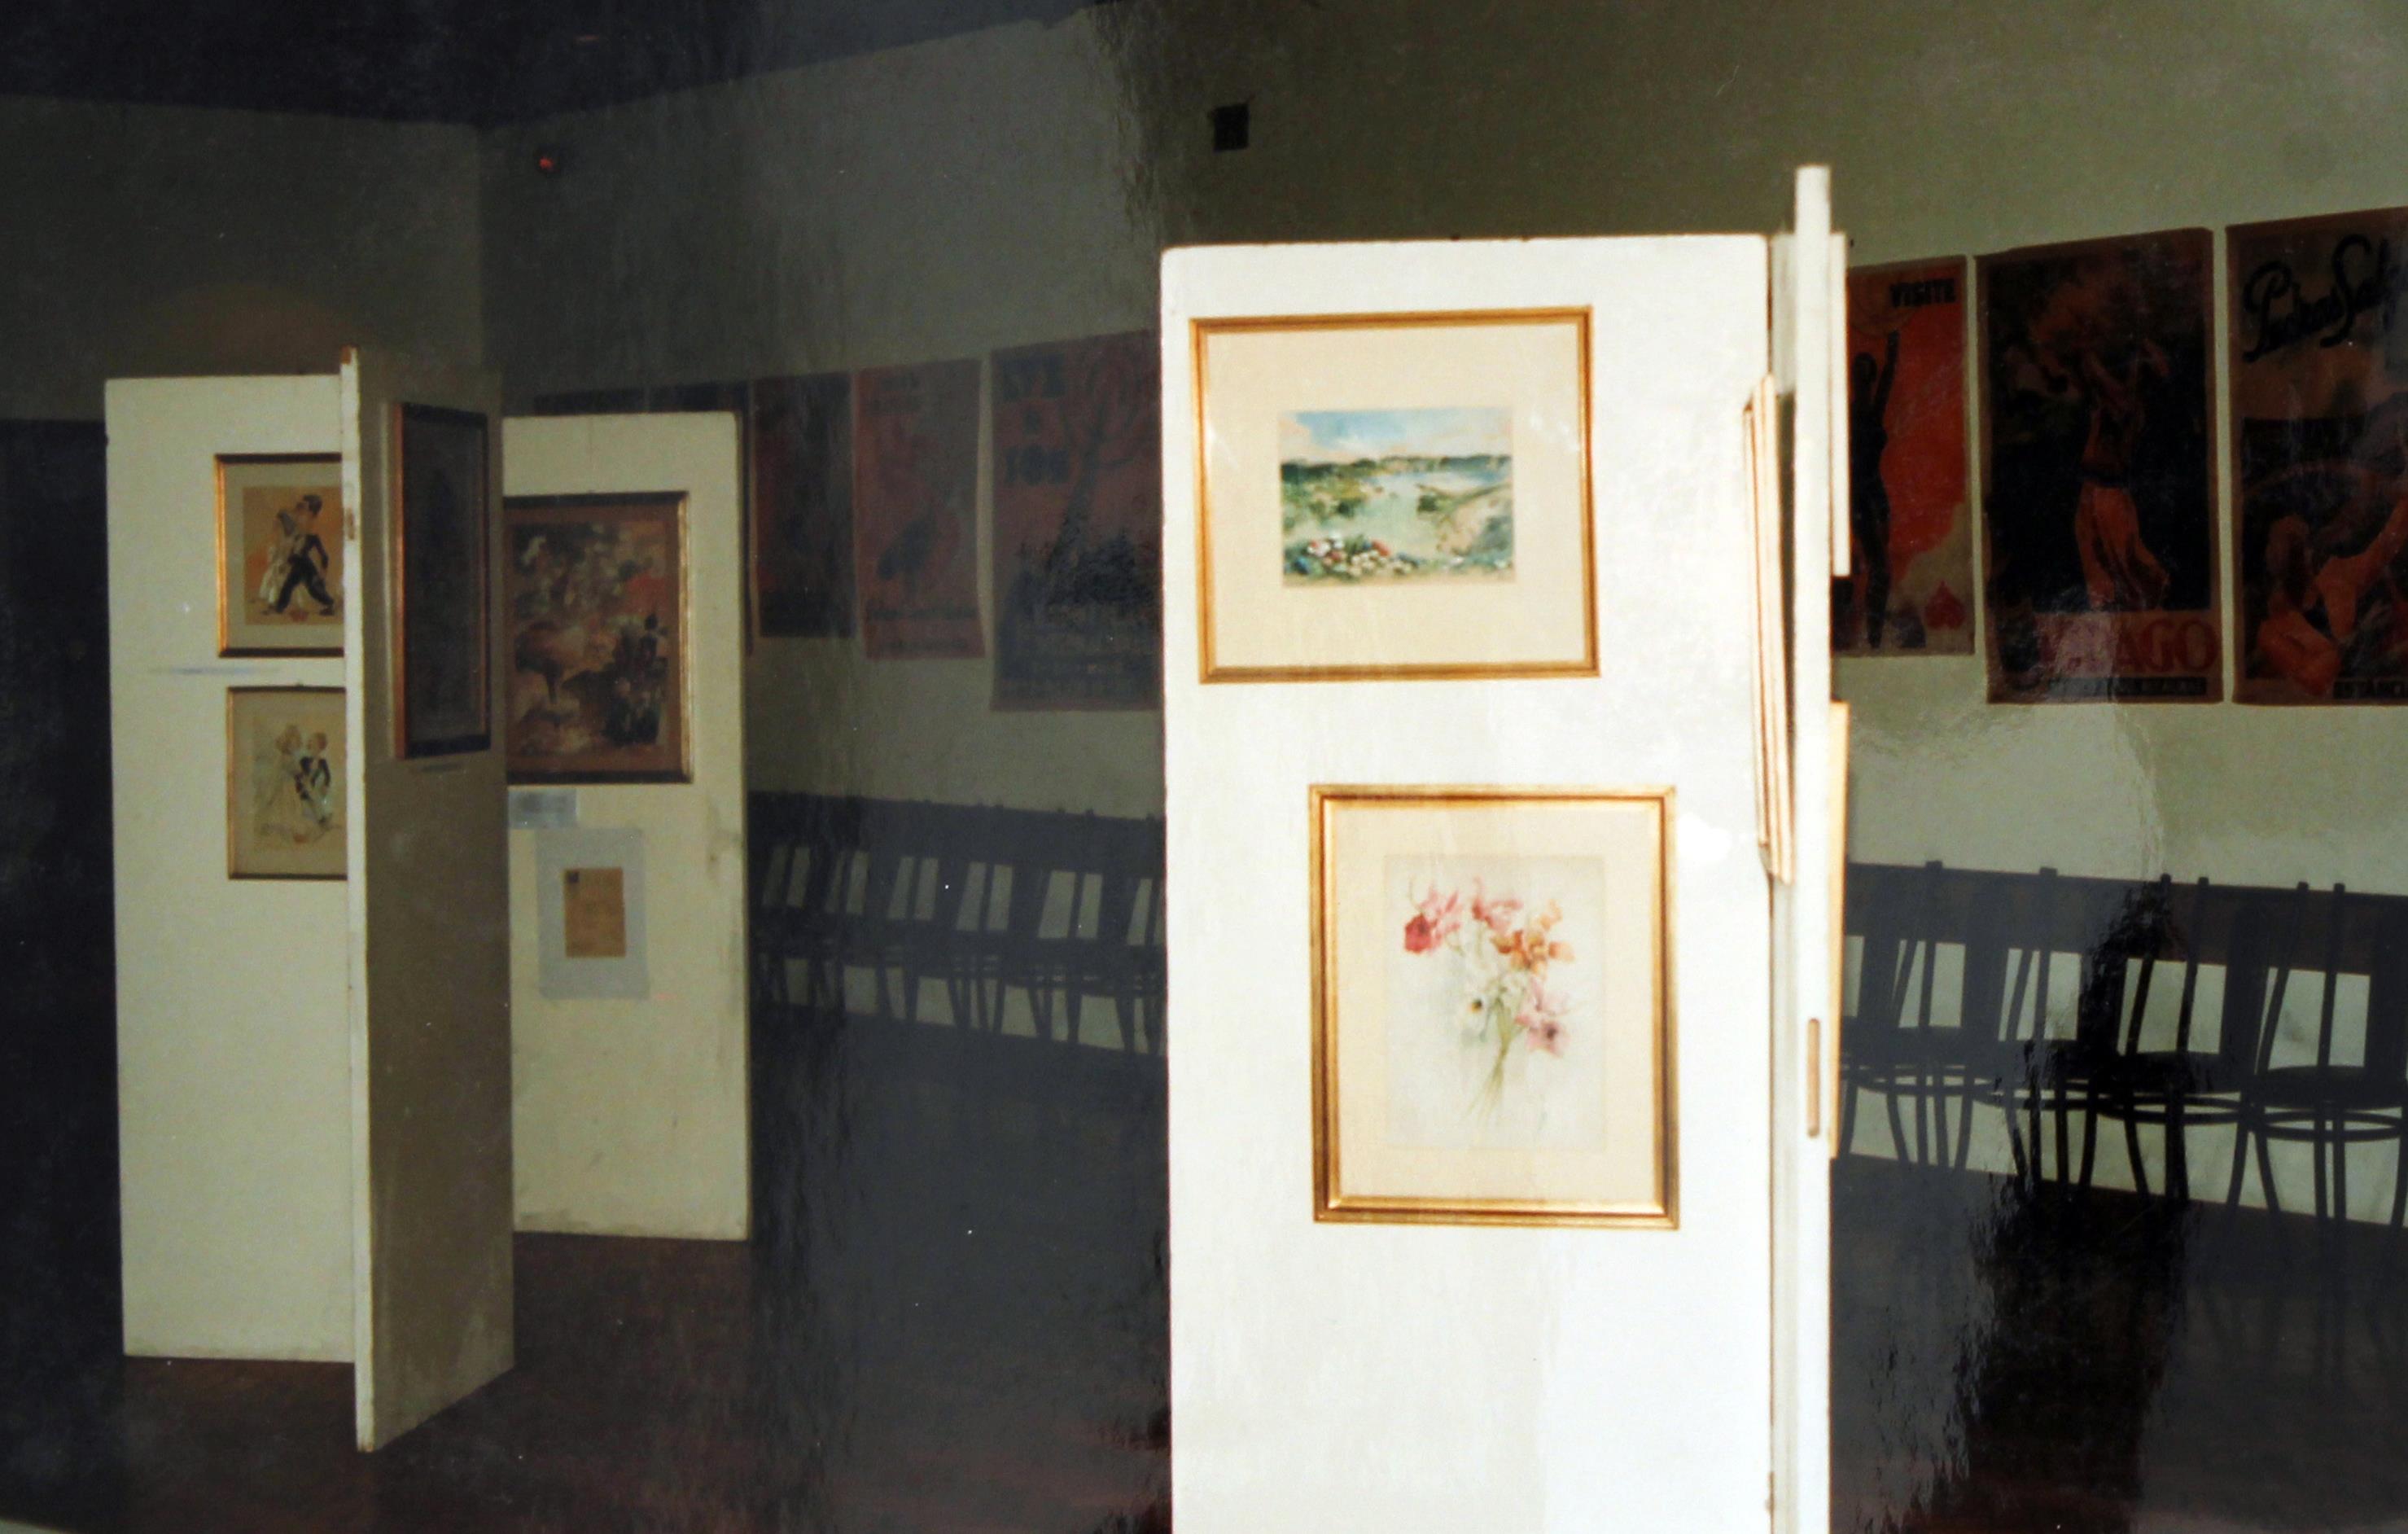 2º Exposição "Documental" póstuma :«Uma obra : Cruz Caldas» : vários aspetos gerais e pormenorizados da exposição